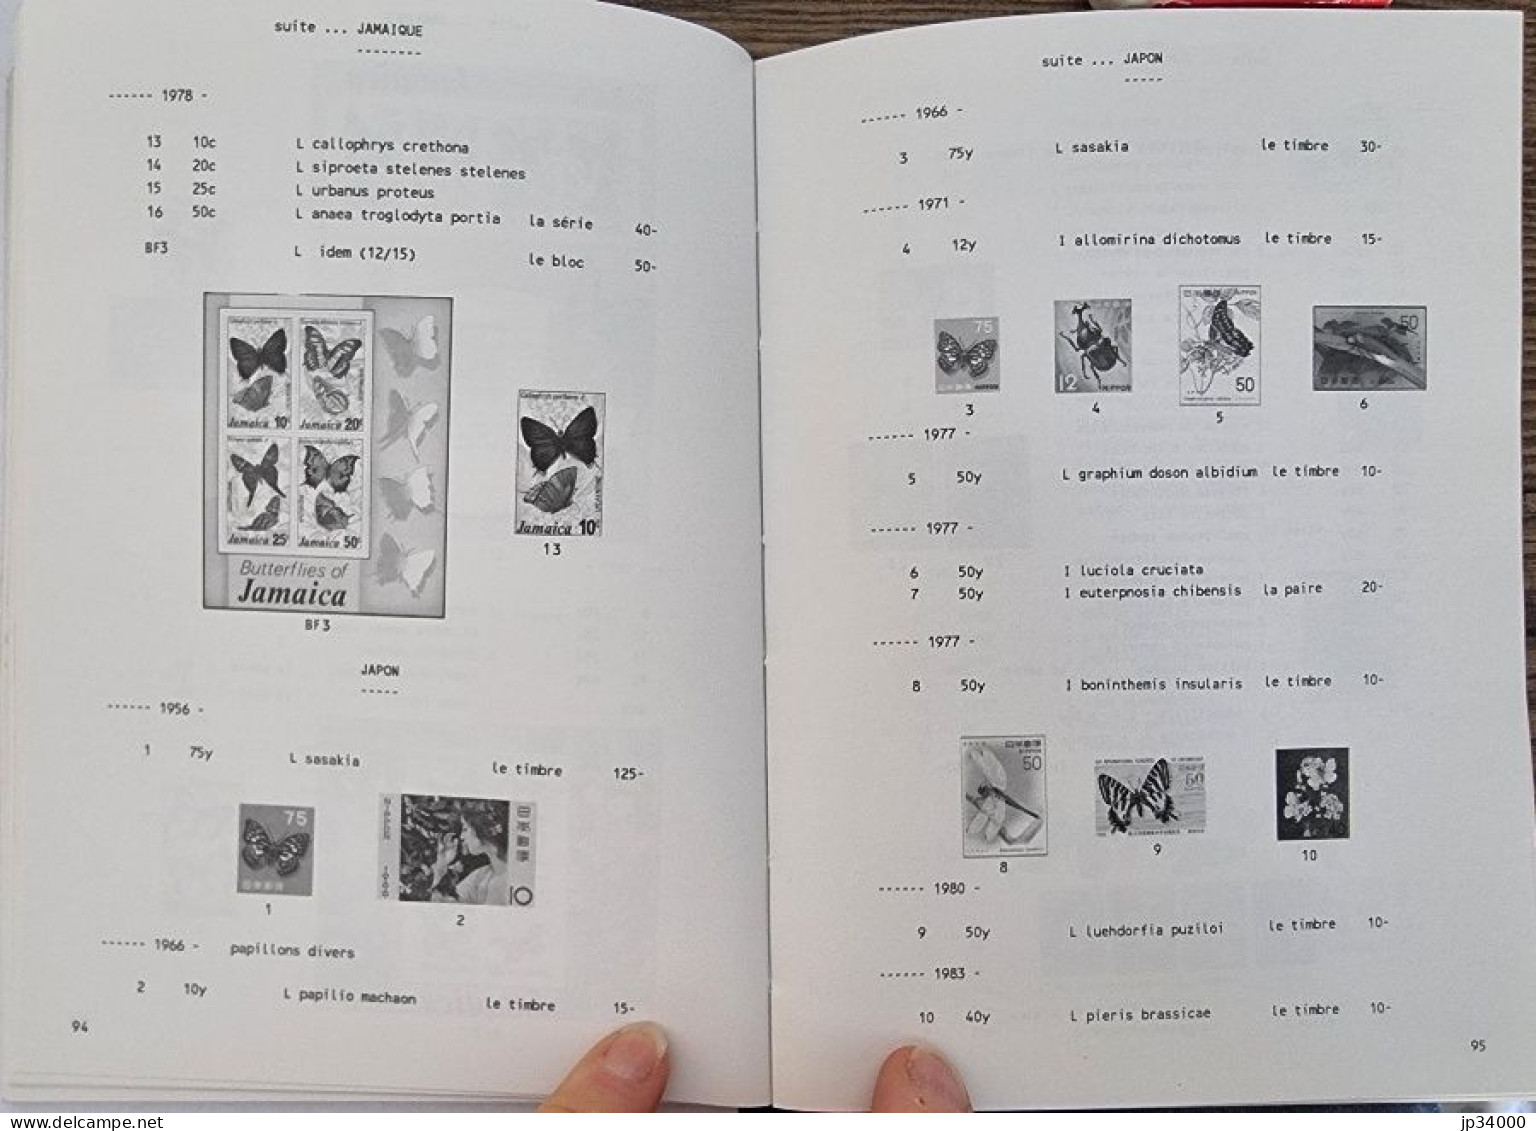 Catalogue A.P.I. De Timbres Poste "Insectes Et Arachnides" Du Monde Entier. 1989 - Thématiques